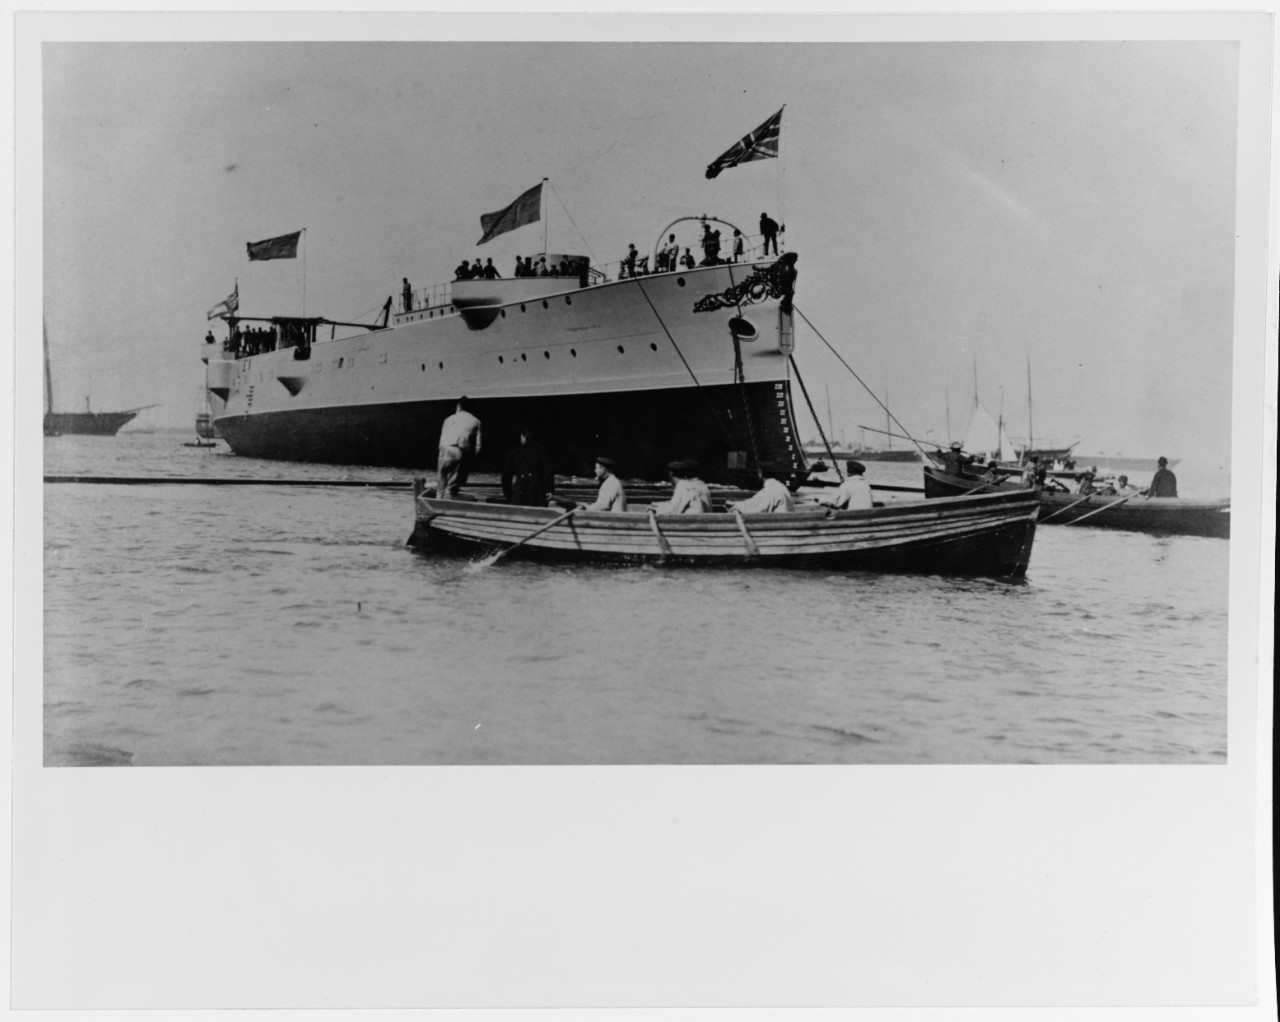 MELPOMENE (British protected cruiser, 1888-19050